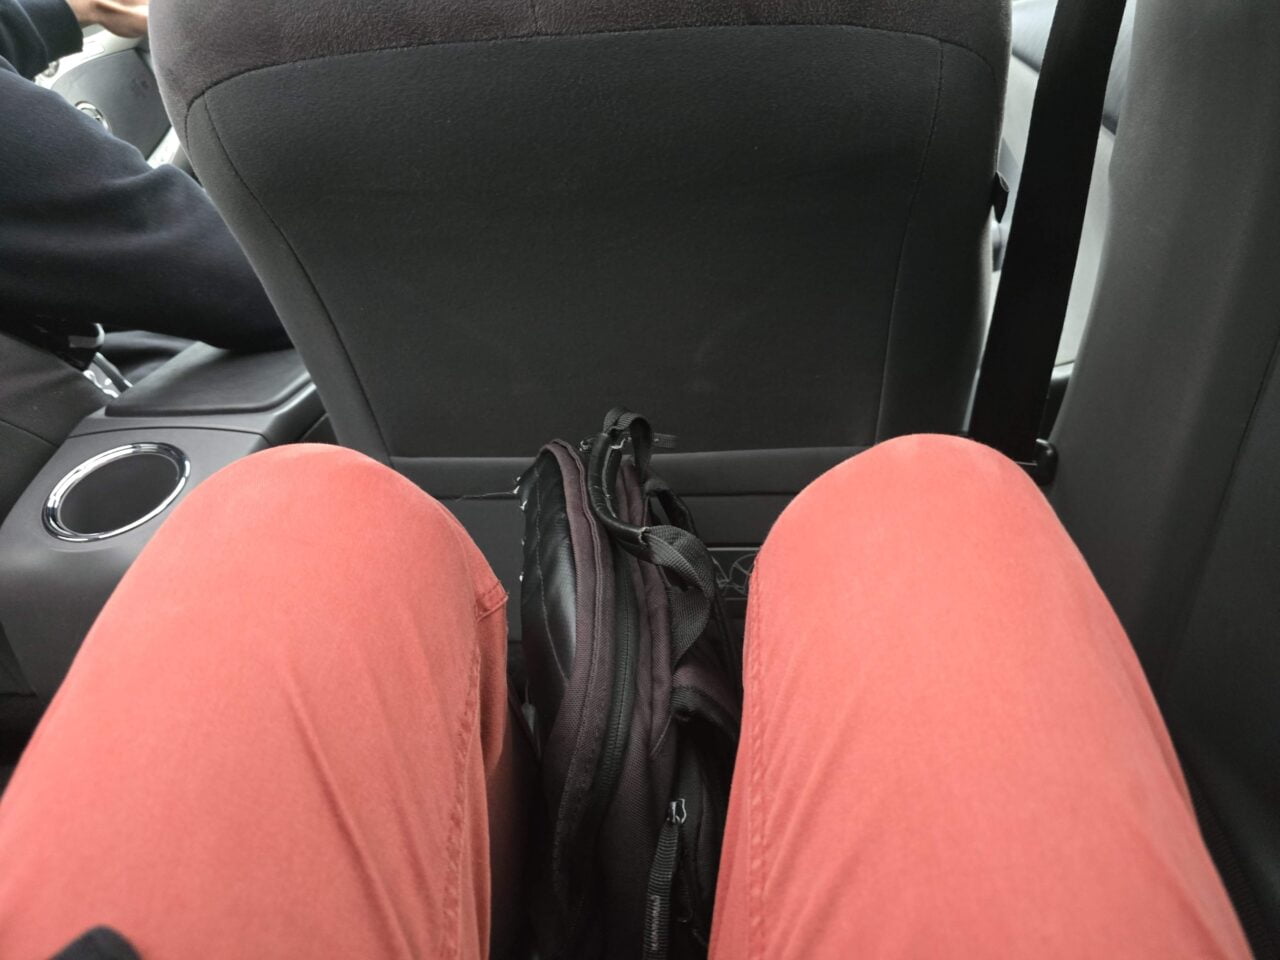 Osoba siedząca na tylnej kanapie samochodu, widok z góry na jej czerwone spodnie i plecak umieszczony między nogami.